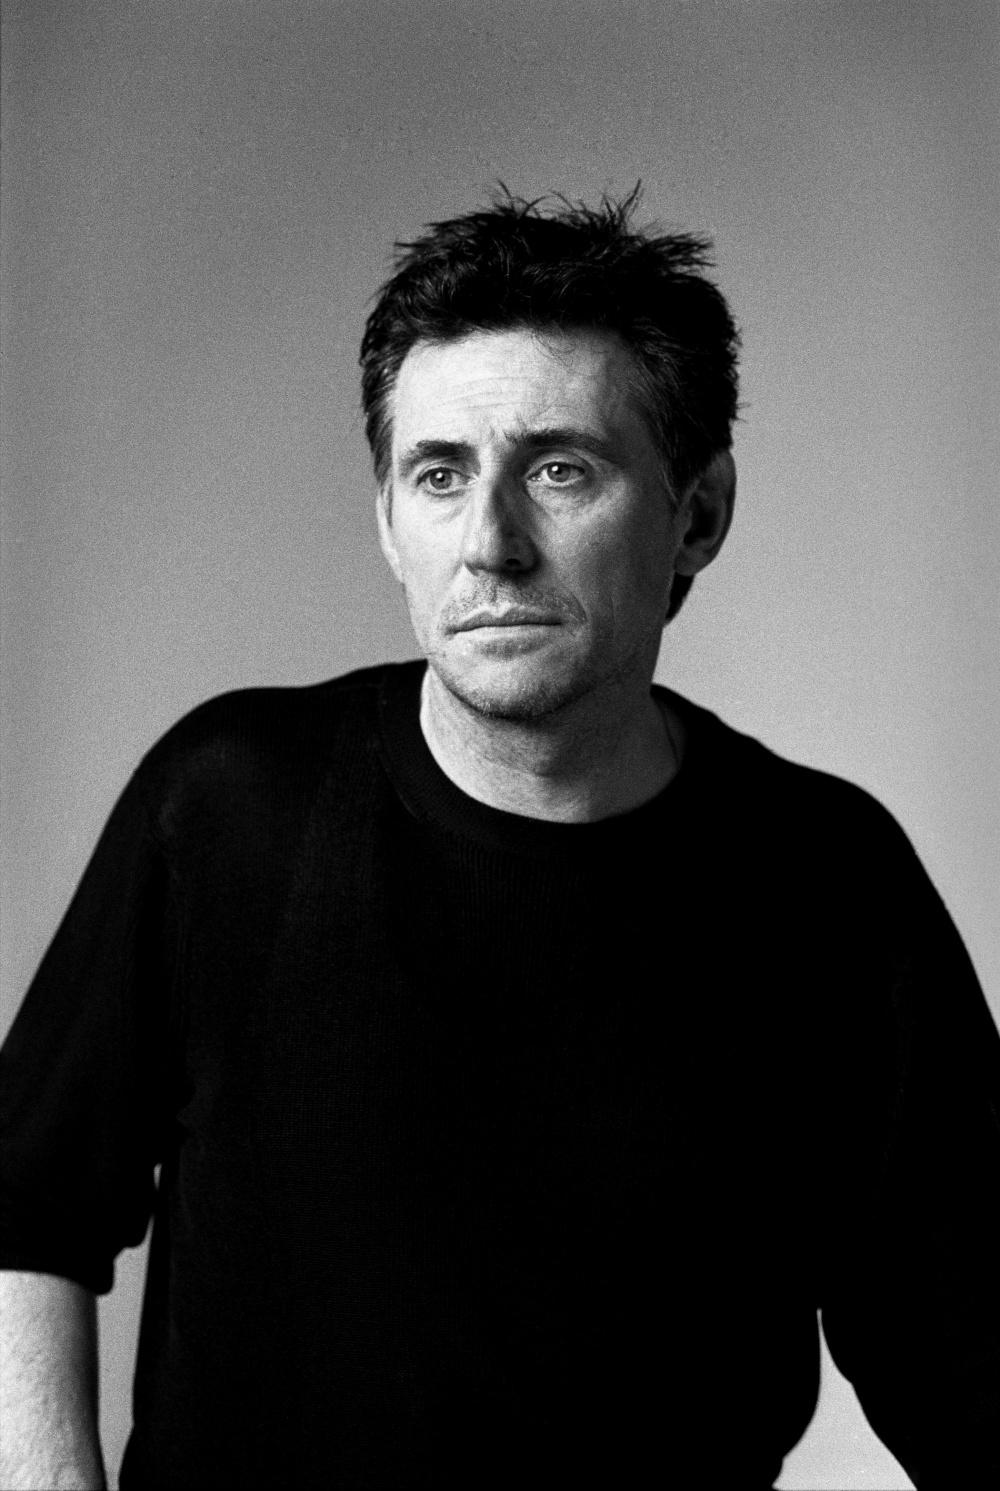 Photo №3428 Gabriel Byrne.